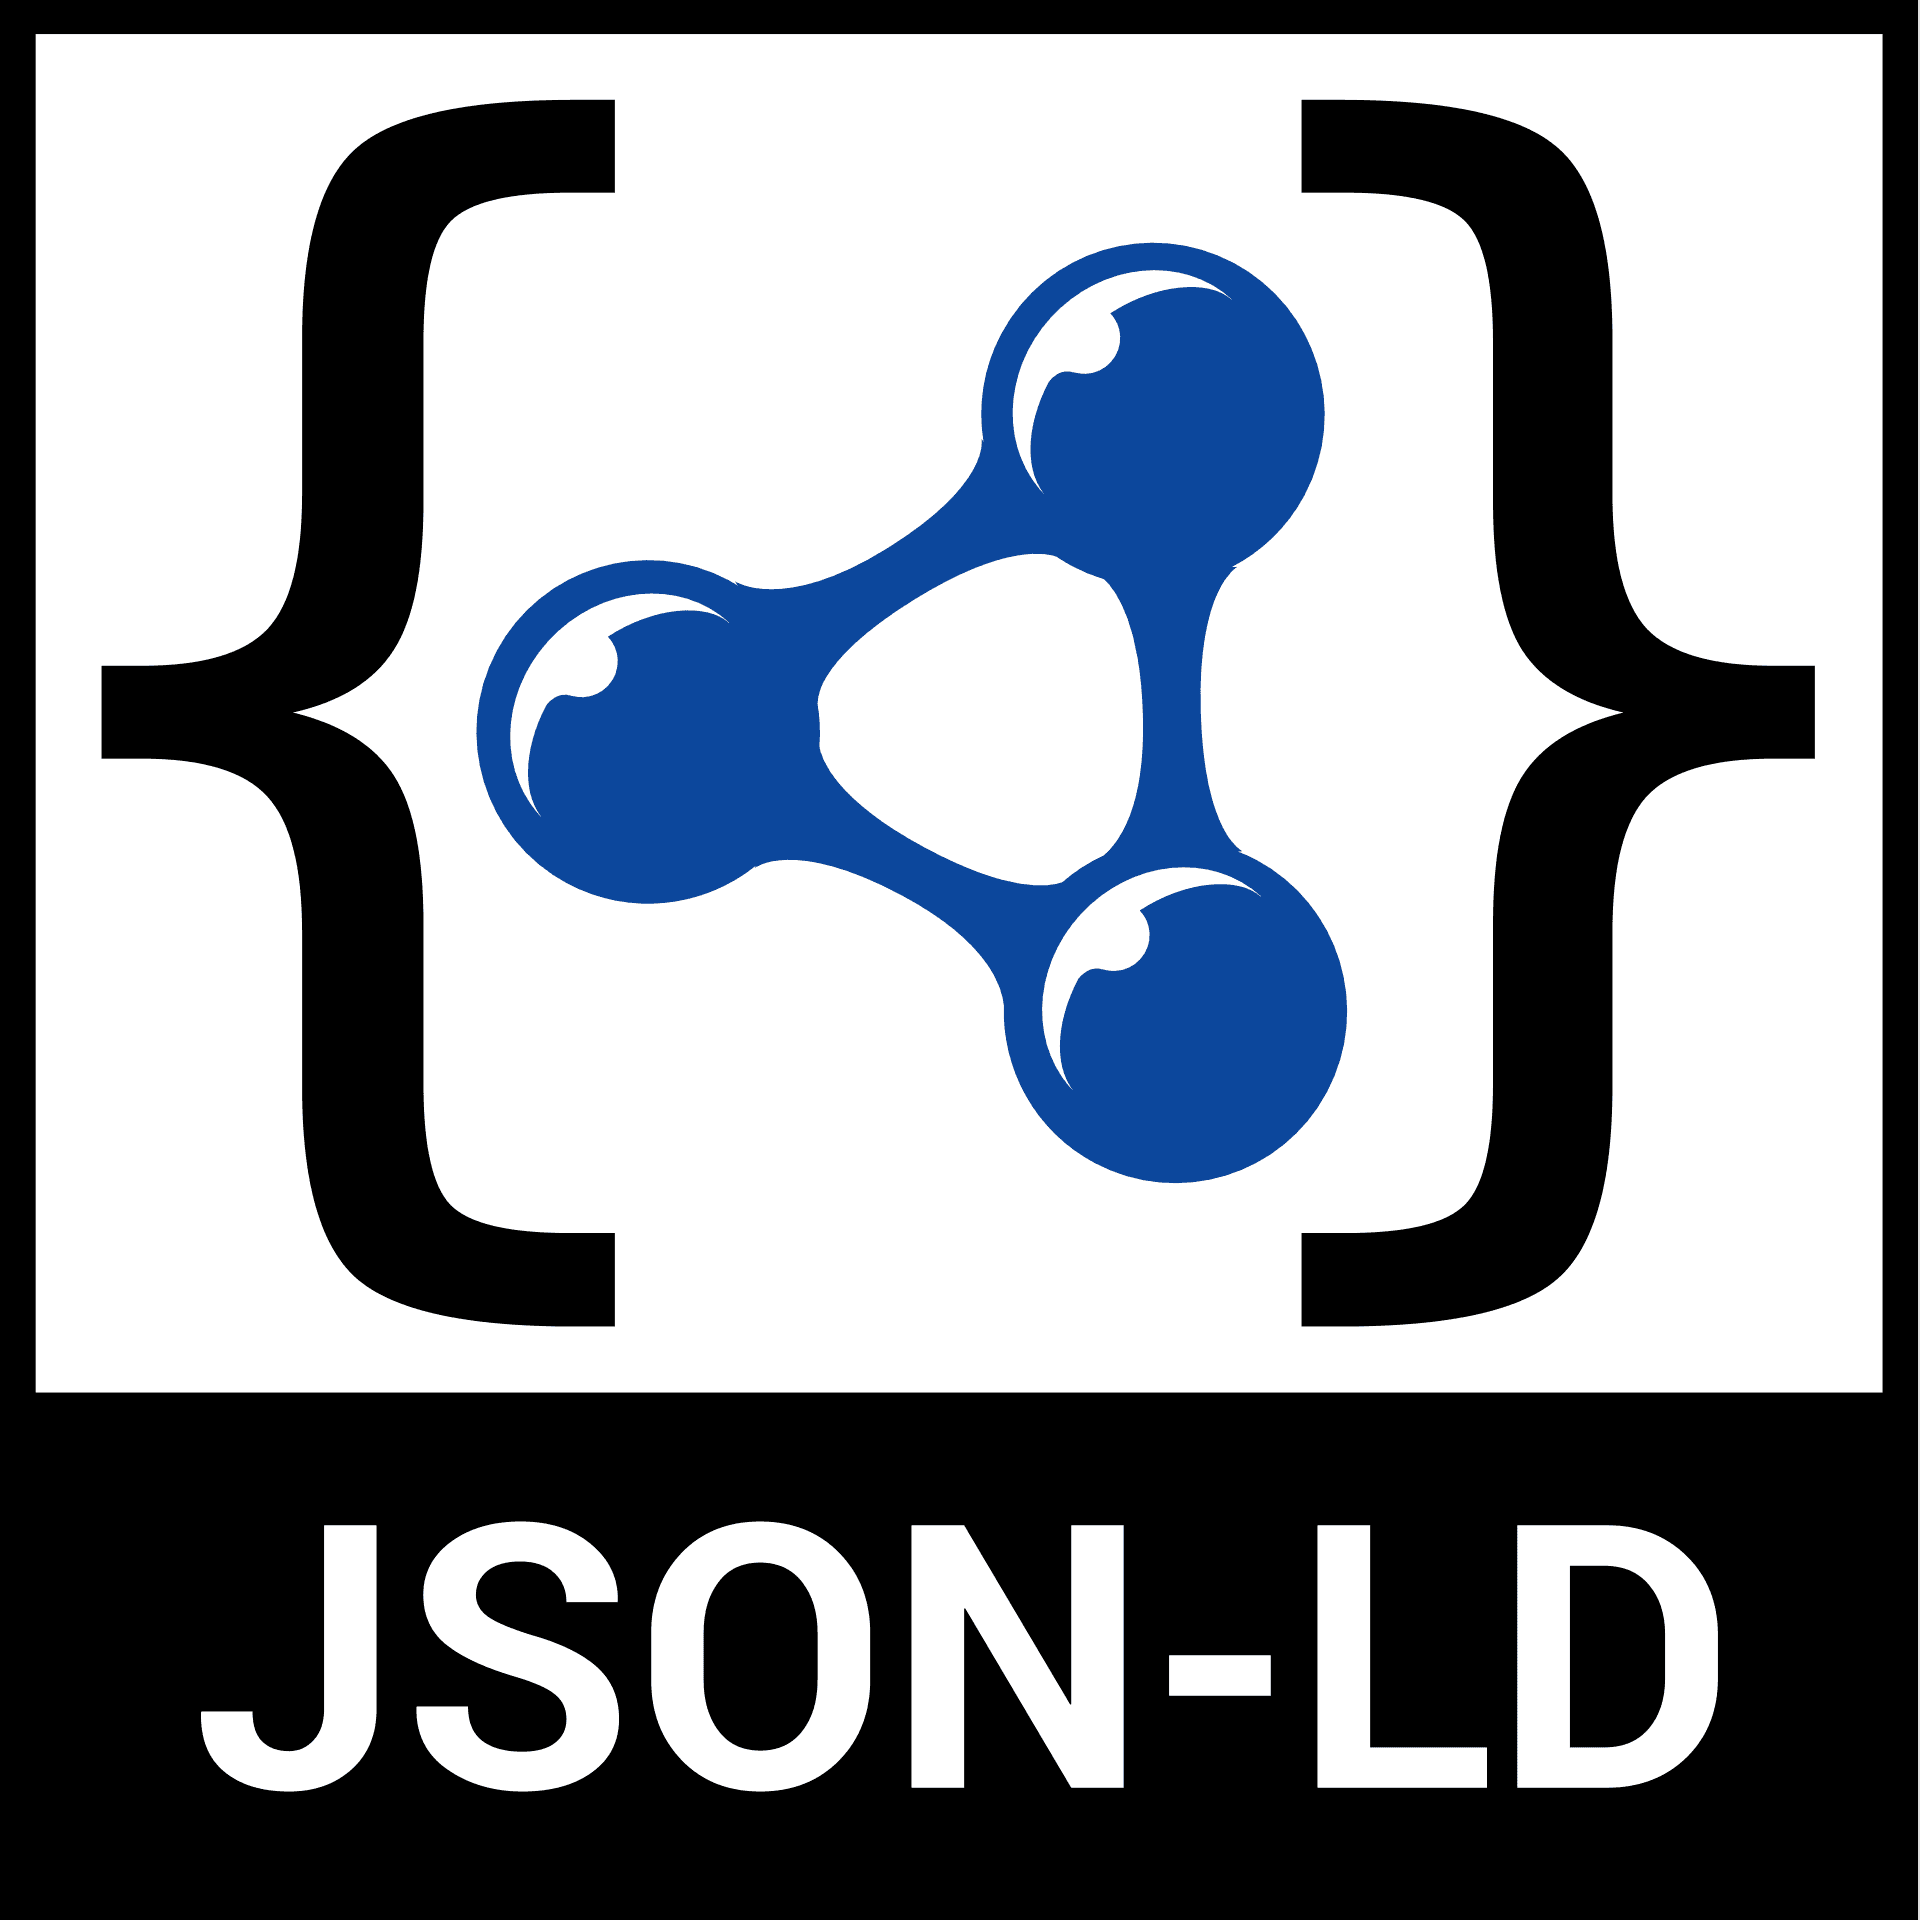 JSON Logo - JSON LD Image Logos